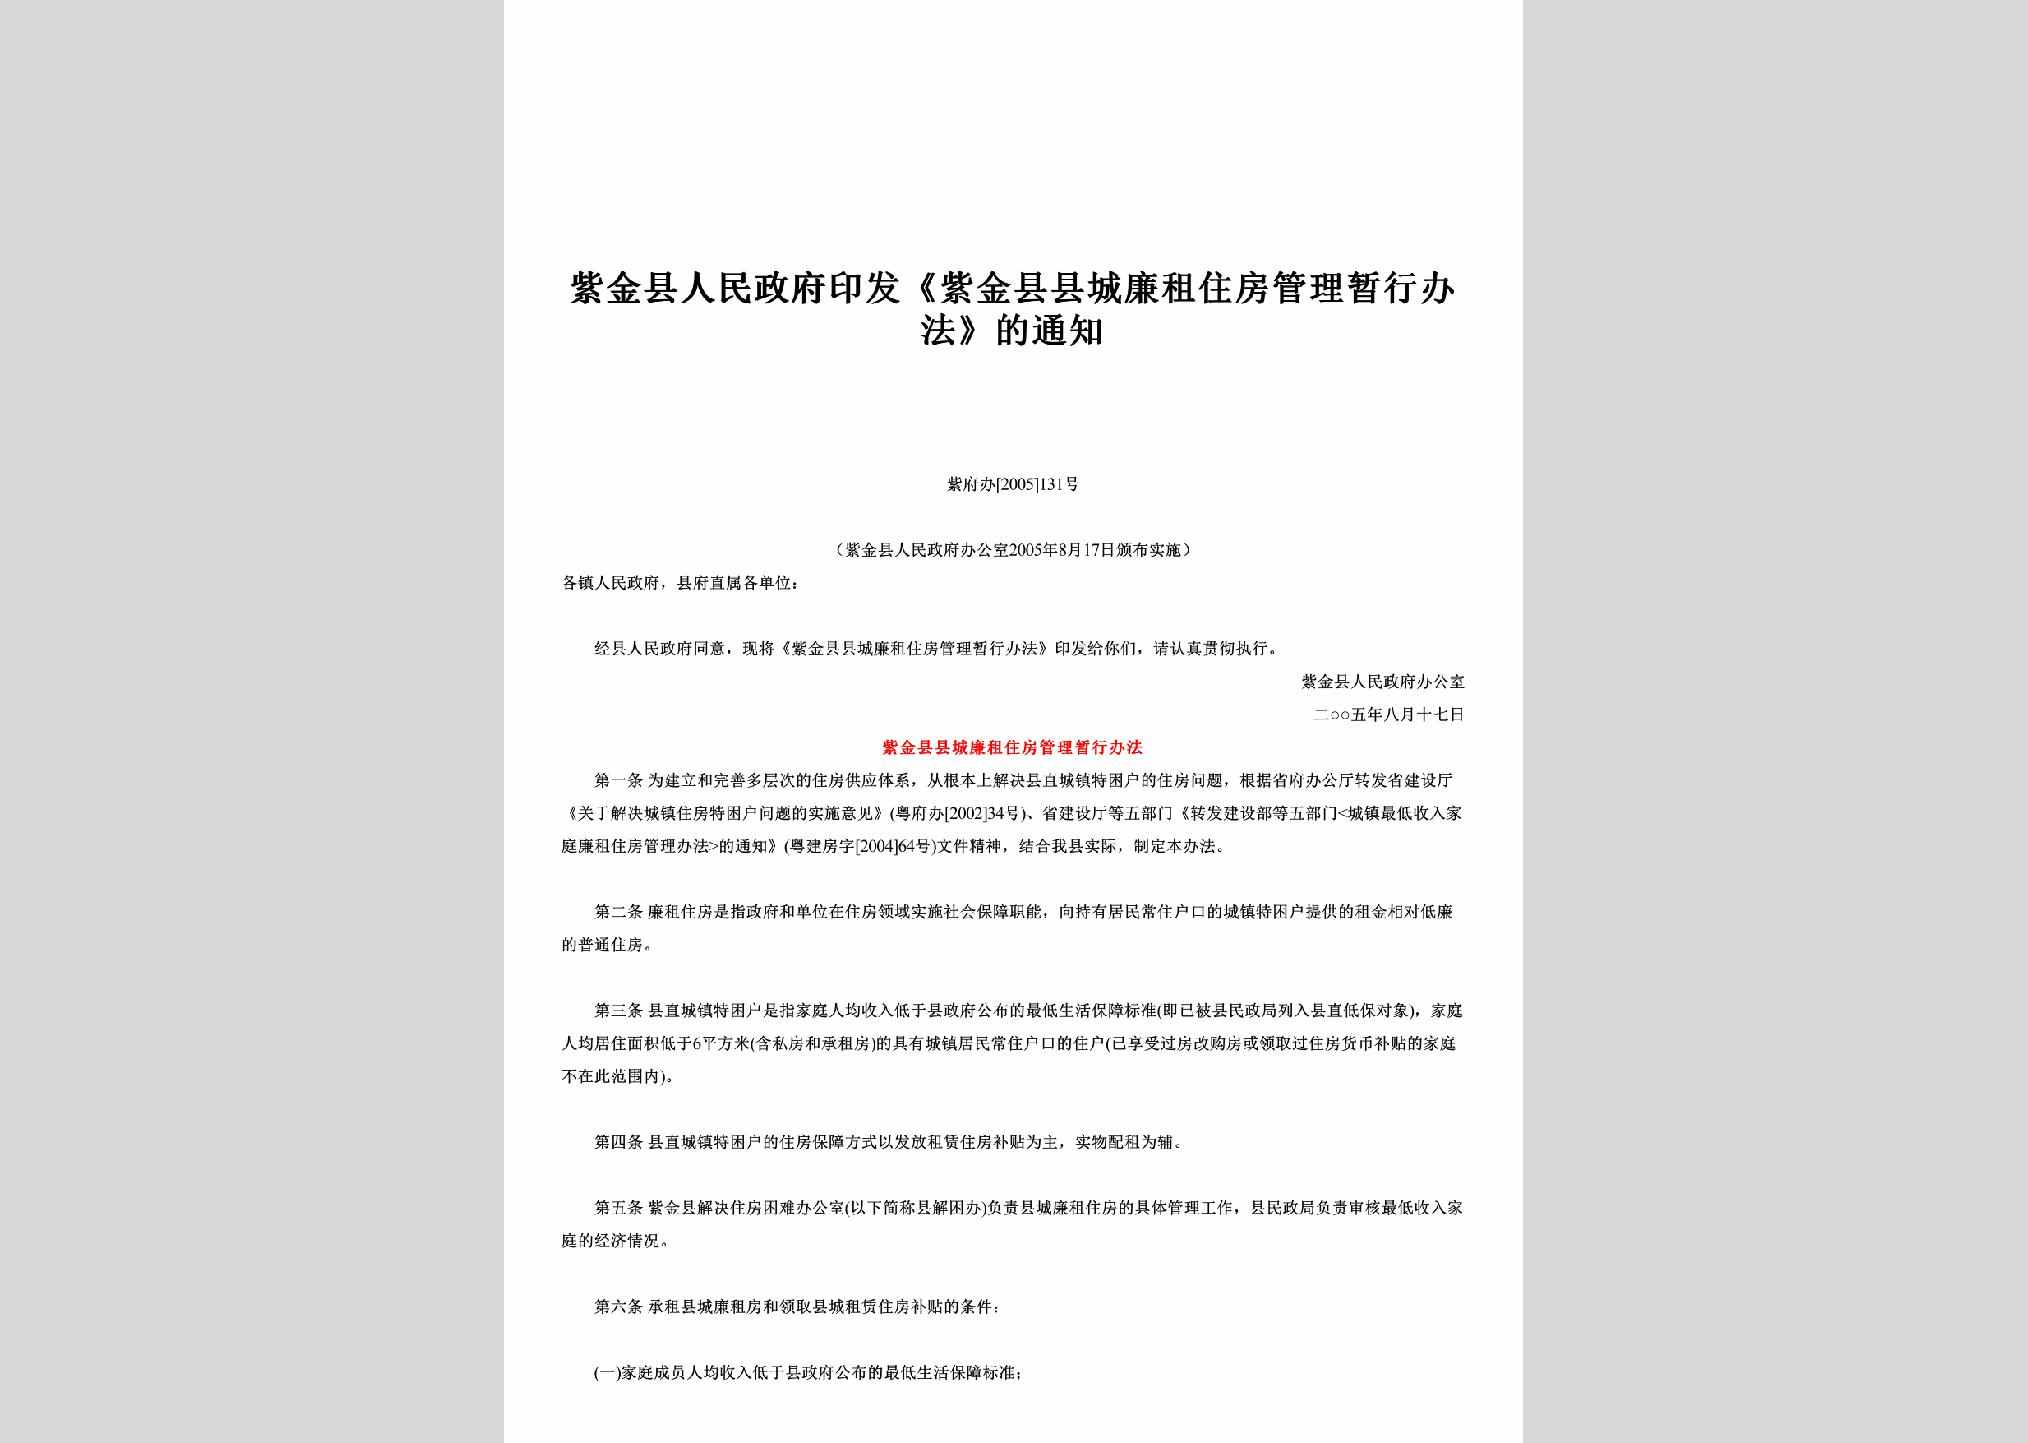 紫府办[2005]131号：印发《紫金县县城廉租住房管理暂行办法》的通知